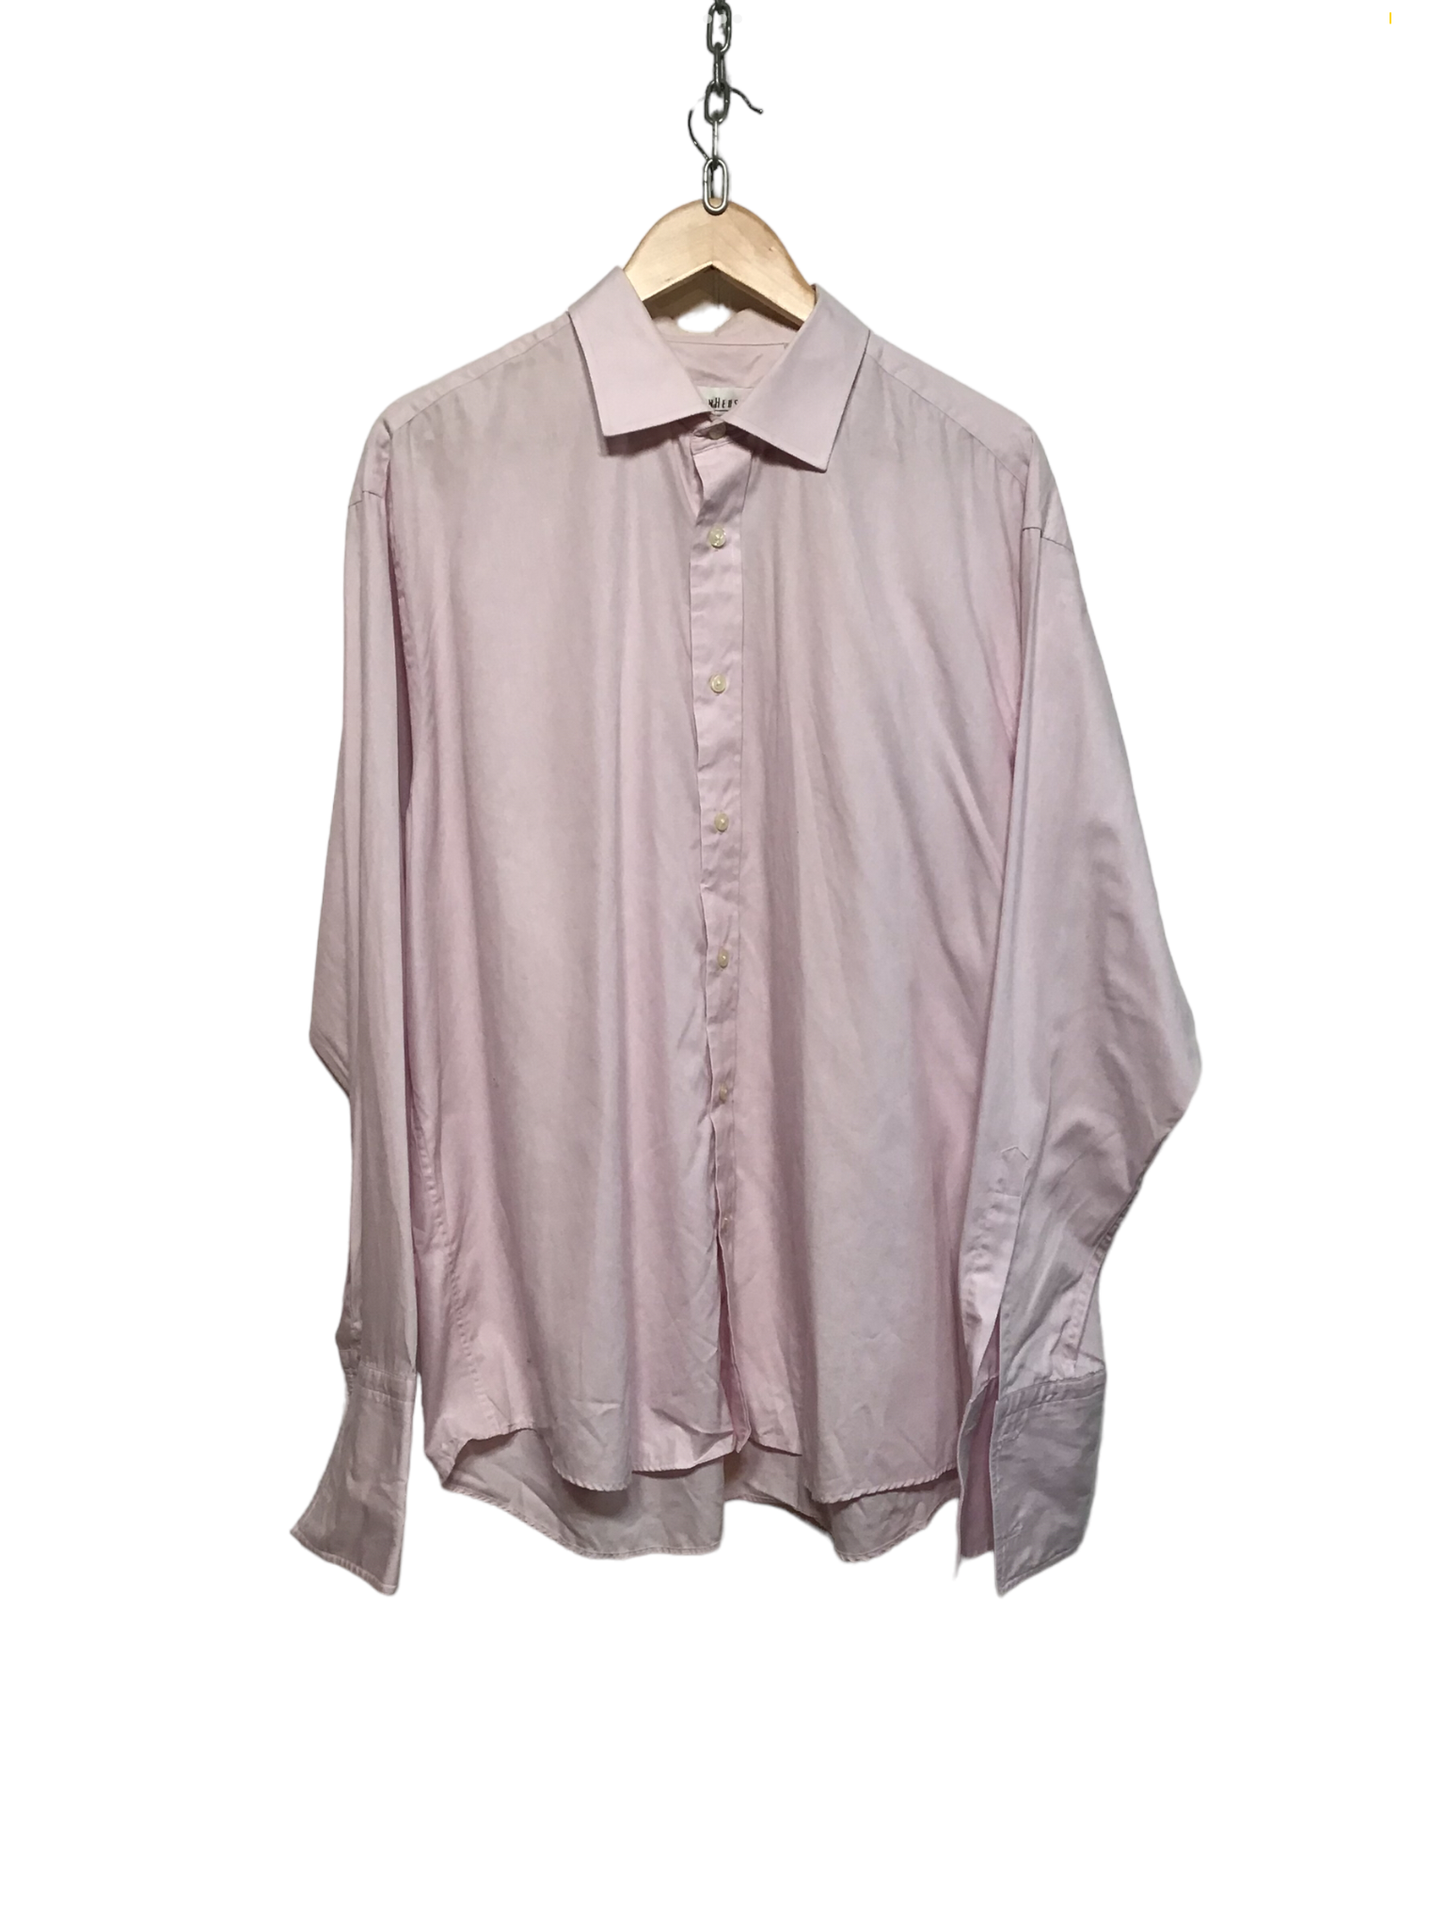 Vanheusen Pink Formal Shirt (Size XL)